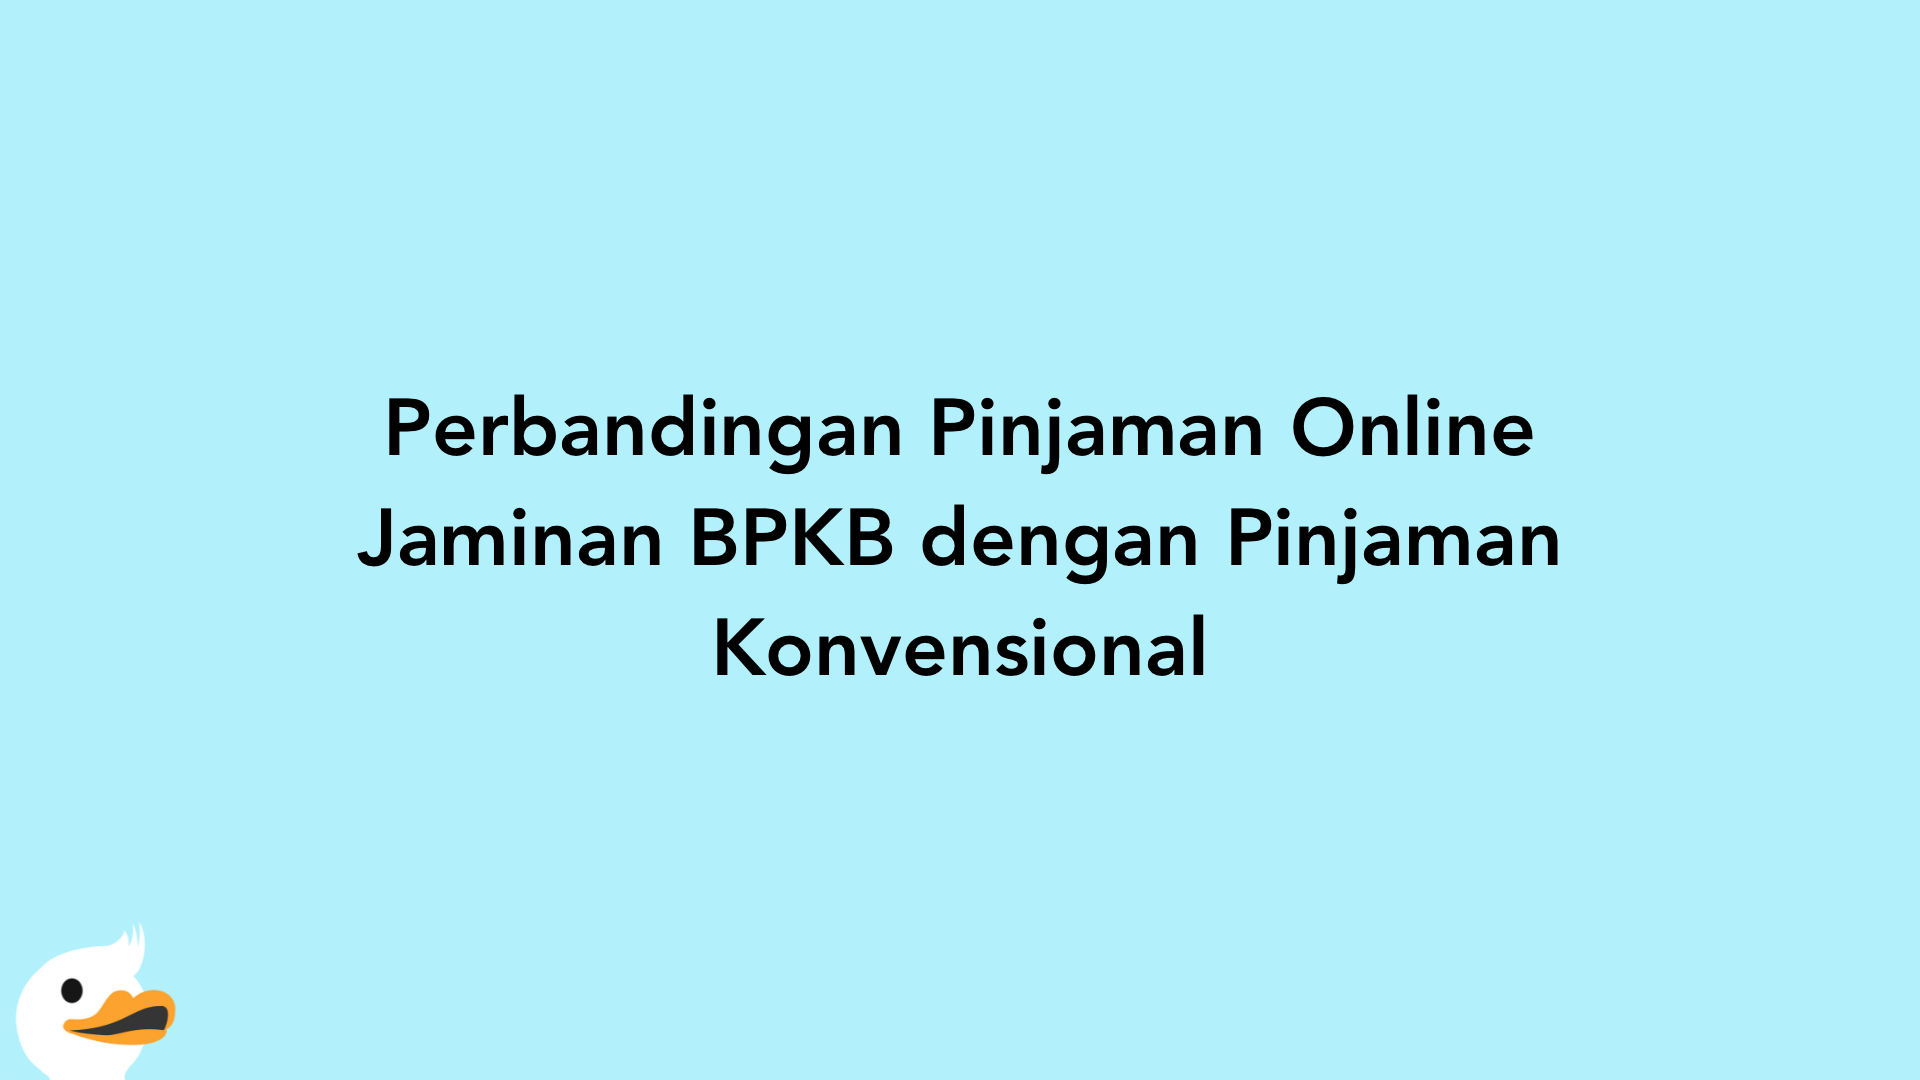 Perbandingan Pinjaman Online Jaminan BPKB dengan Pinjaman Konvensional